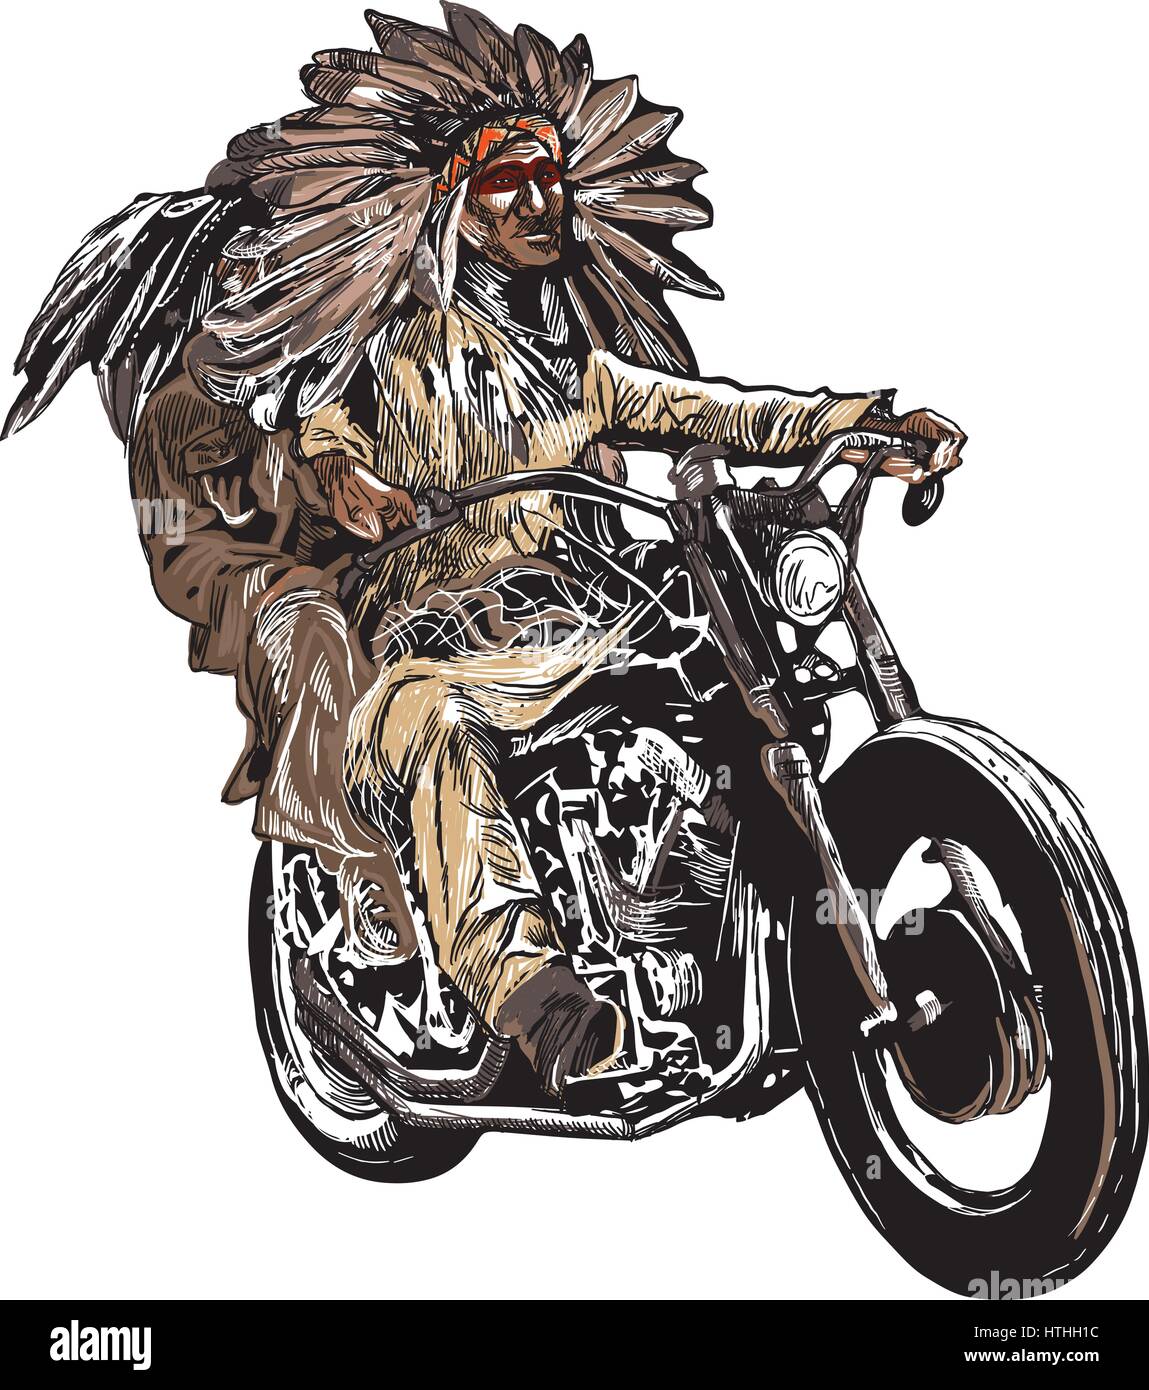 Un disegnati a mano, il vettore schizzi a mano libera. Native American giovane, amanti, guidare una moto. Nota - La moto non è specifico di marca - qualcosa come un c Illustrazione Vettoriale